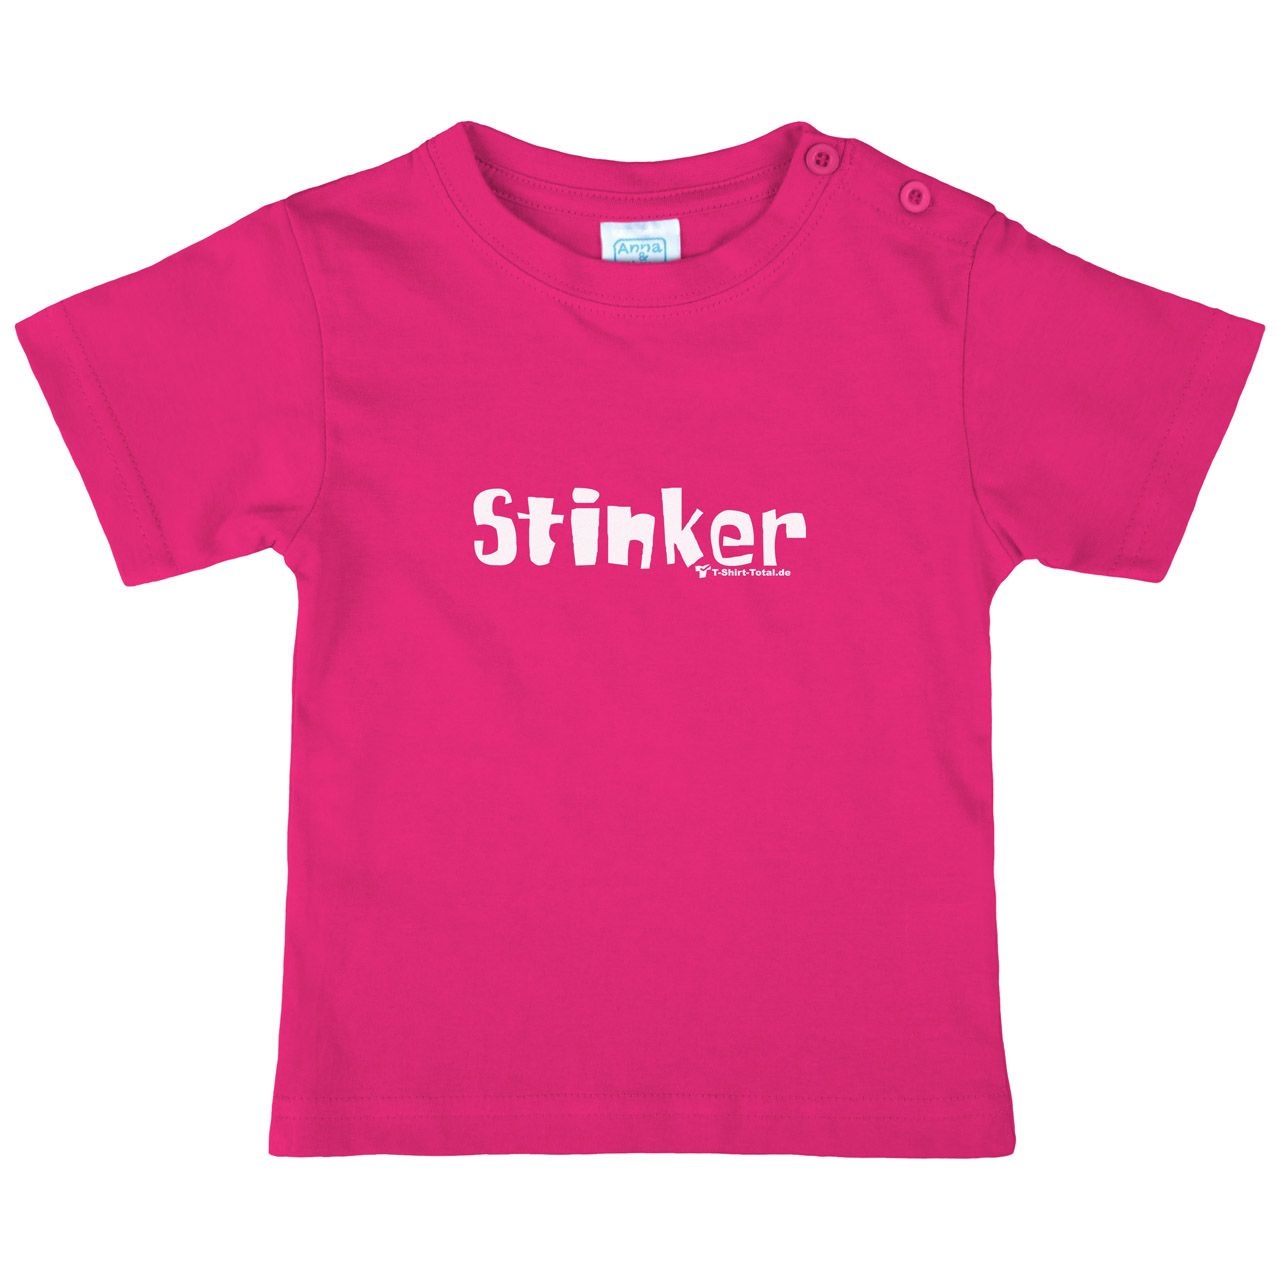 Stinker Kinder T-Shirt pink 80 / 86